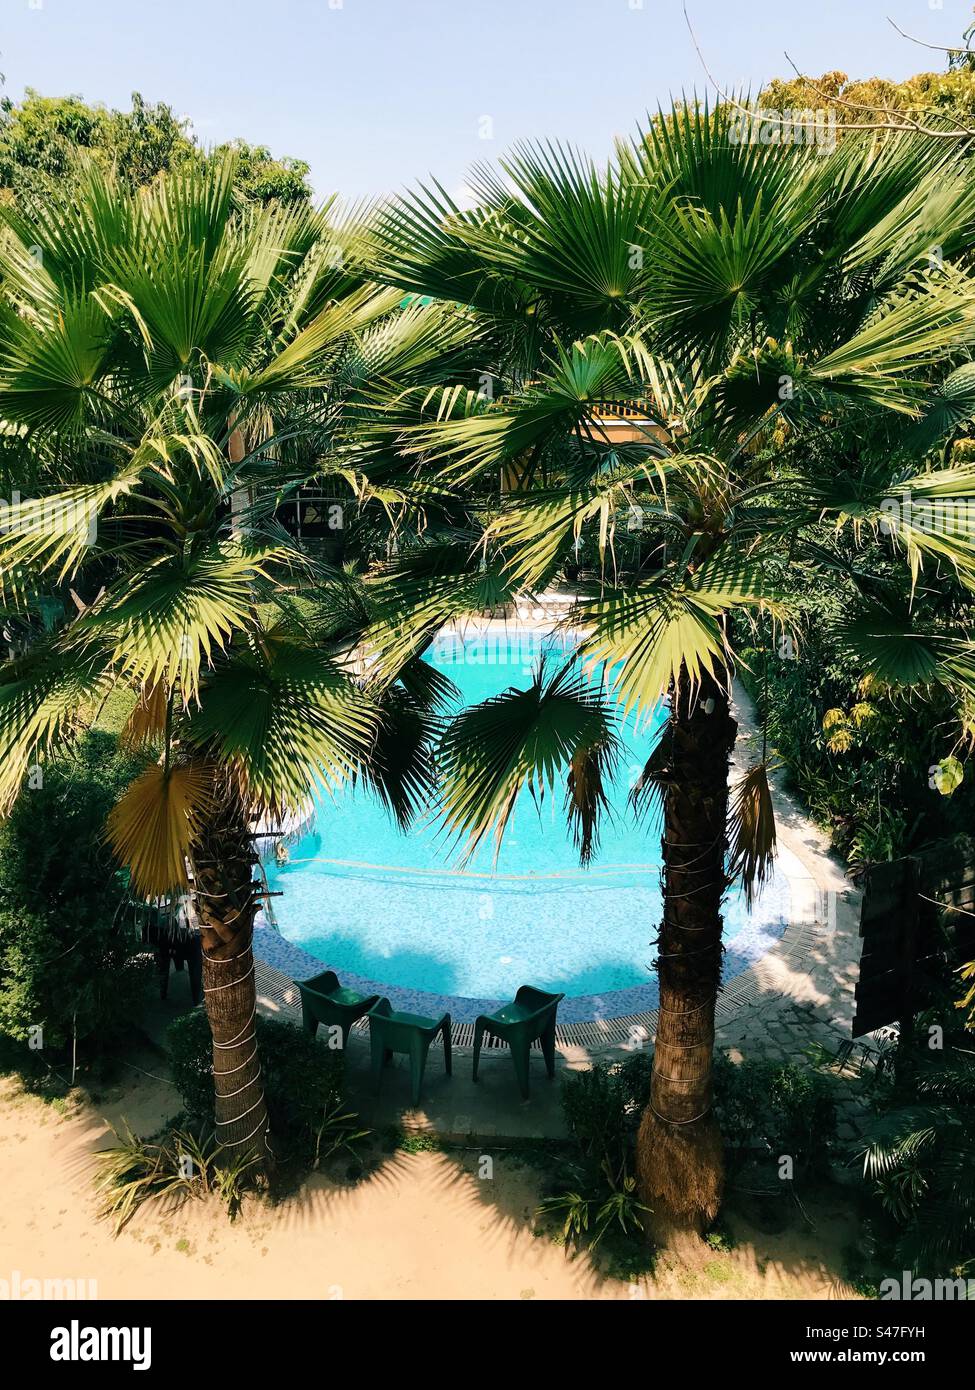 Un complexe avec piscine entourée de palmiers Banque D'Images